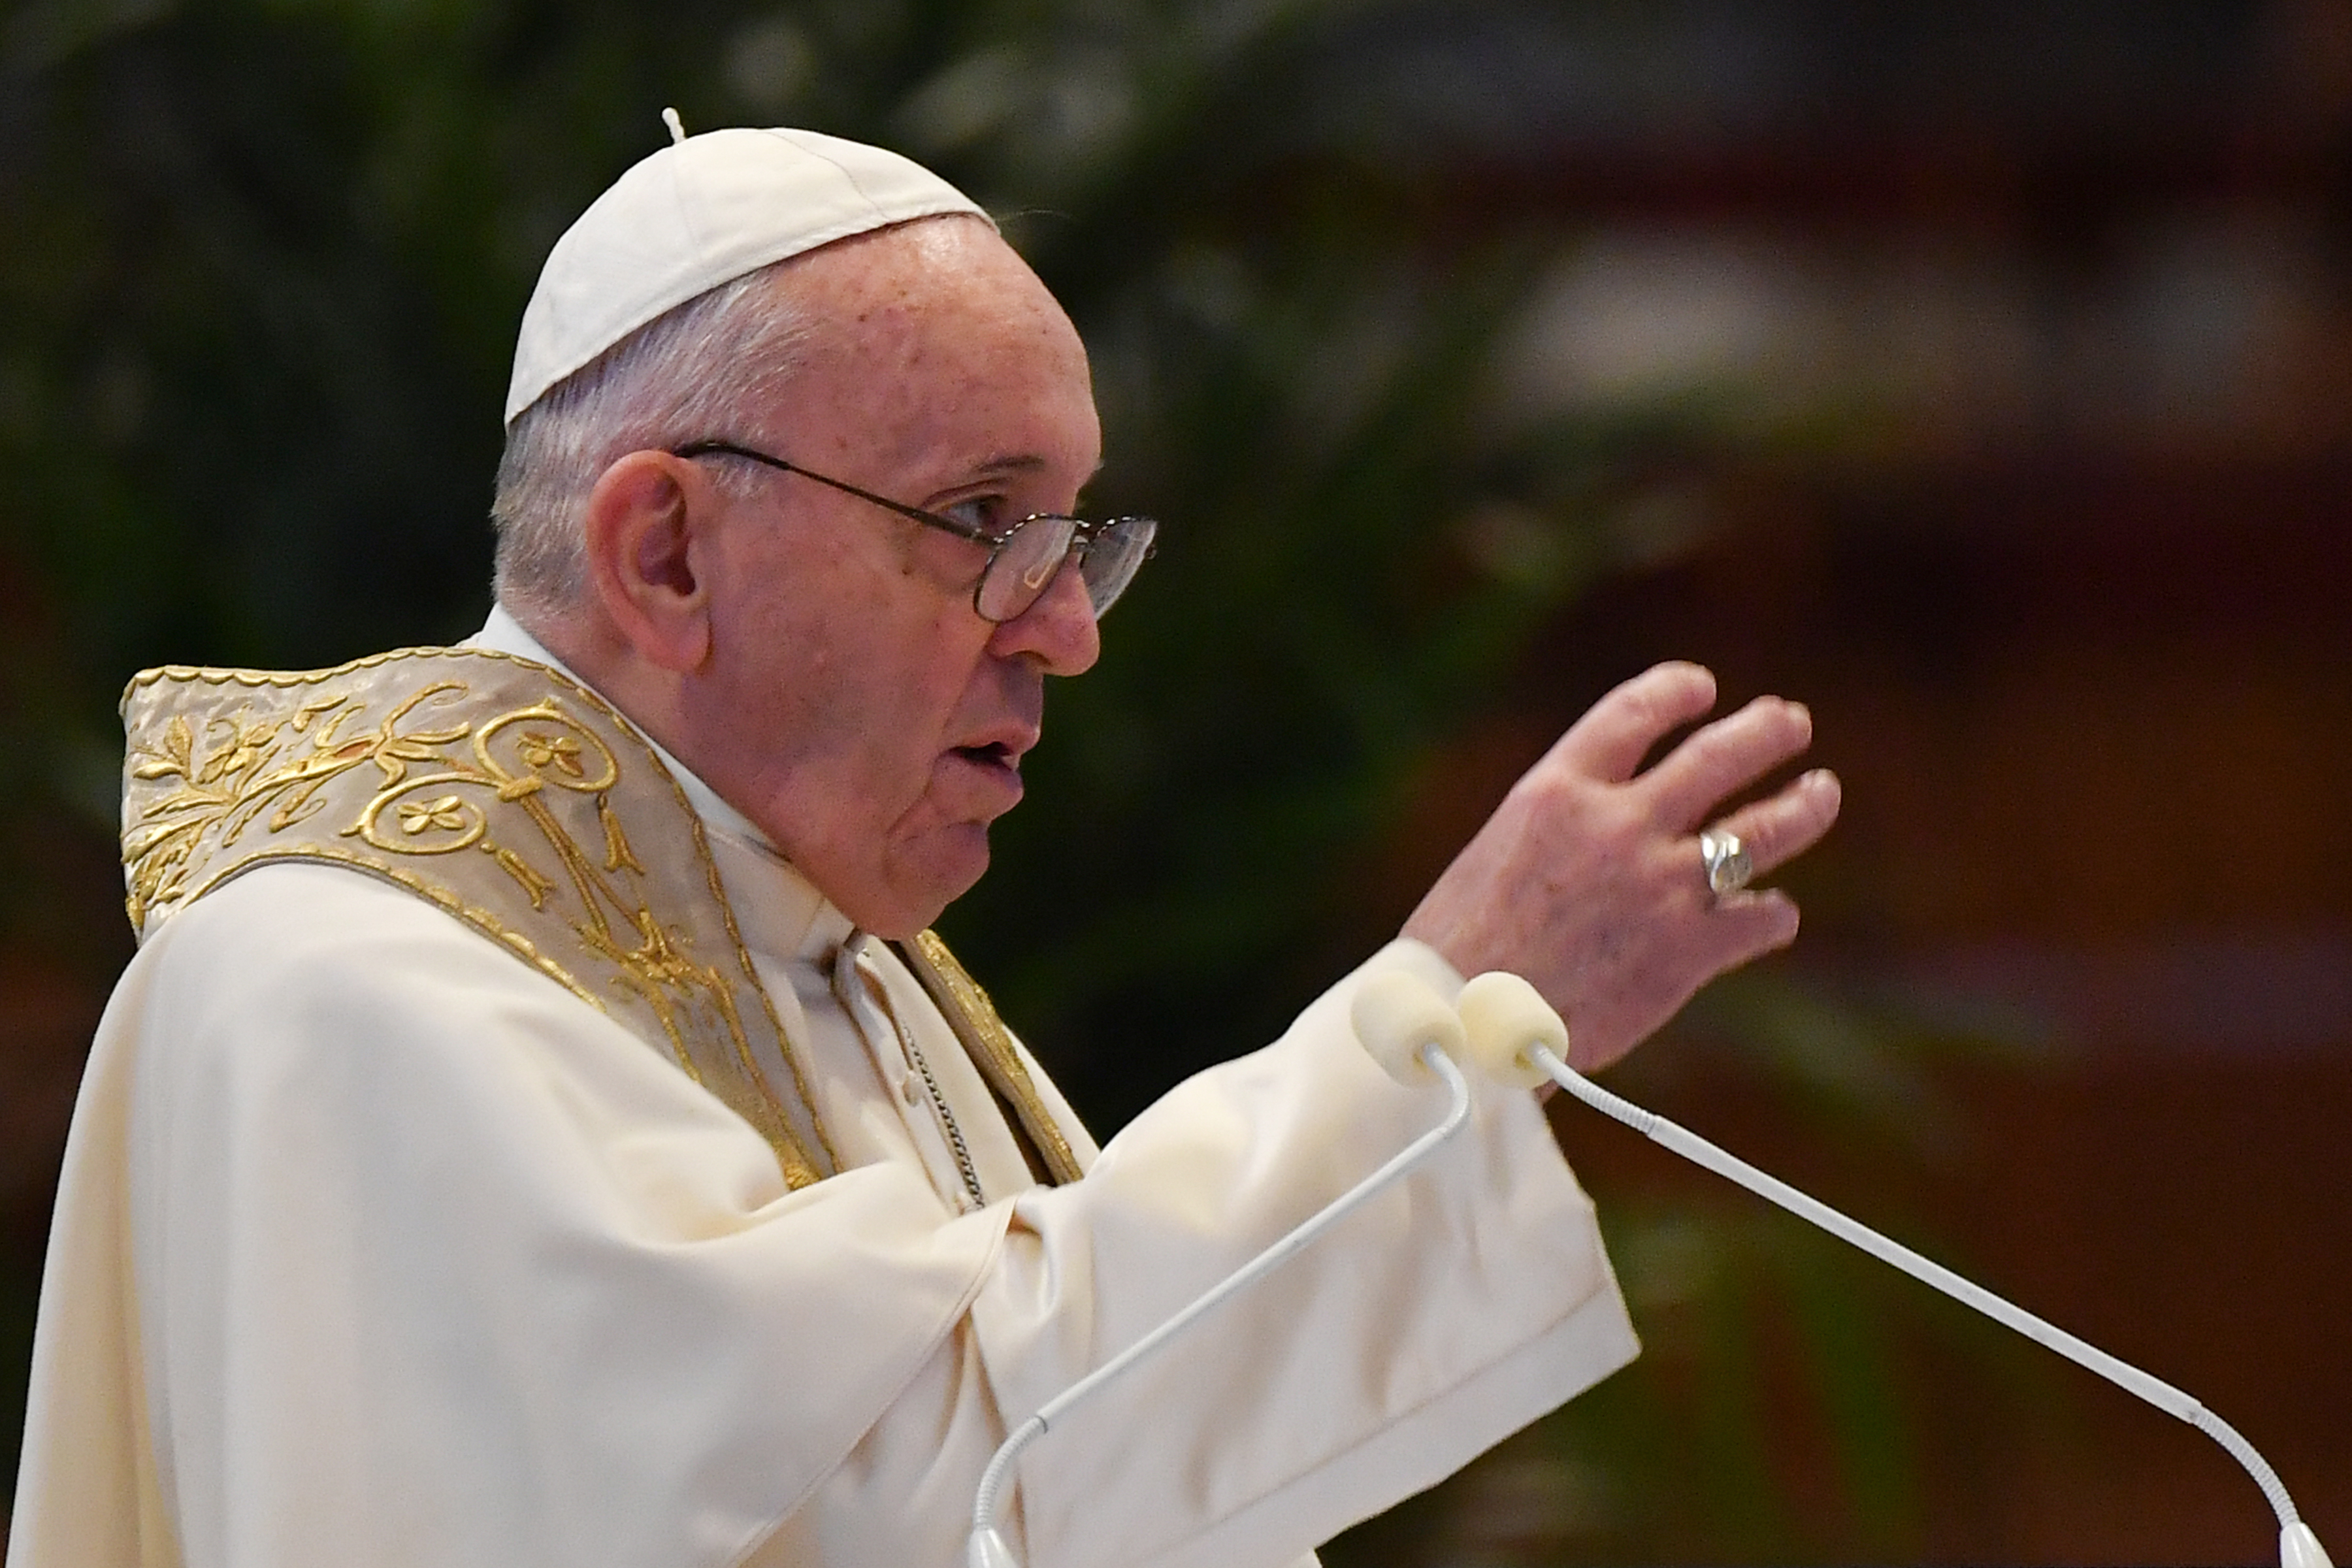 El papa Francisco dice que pagar impuestos es un “deber” ciudadano